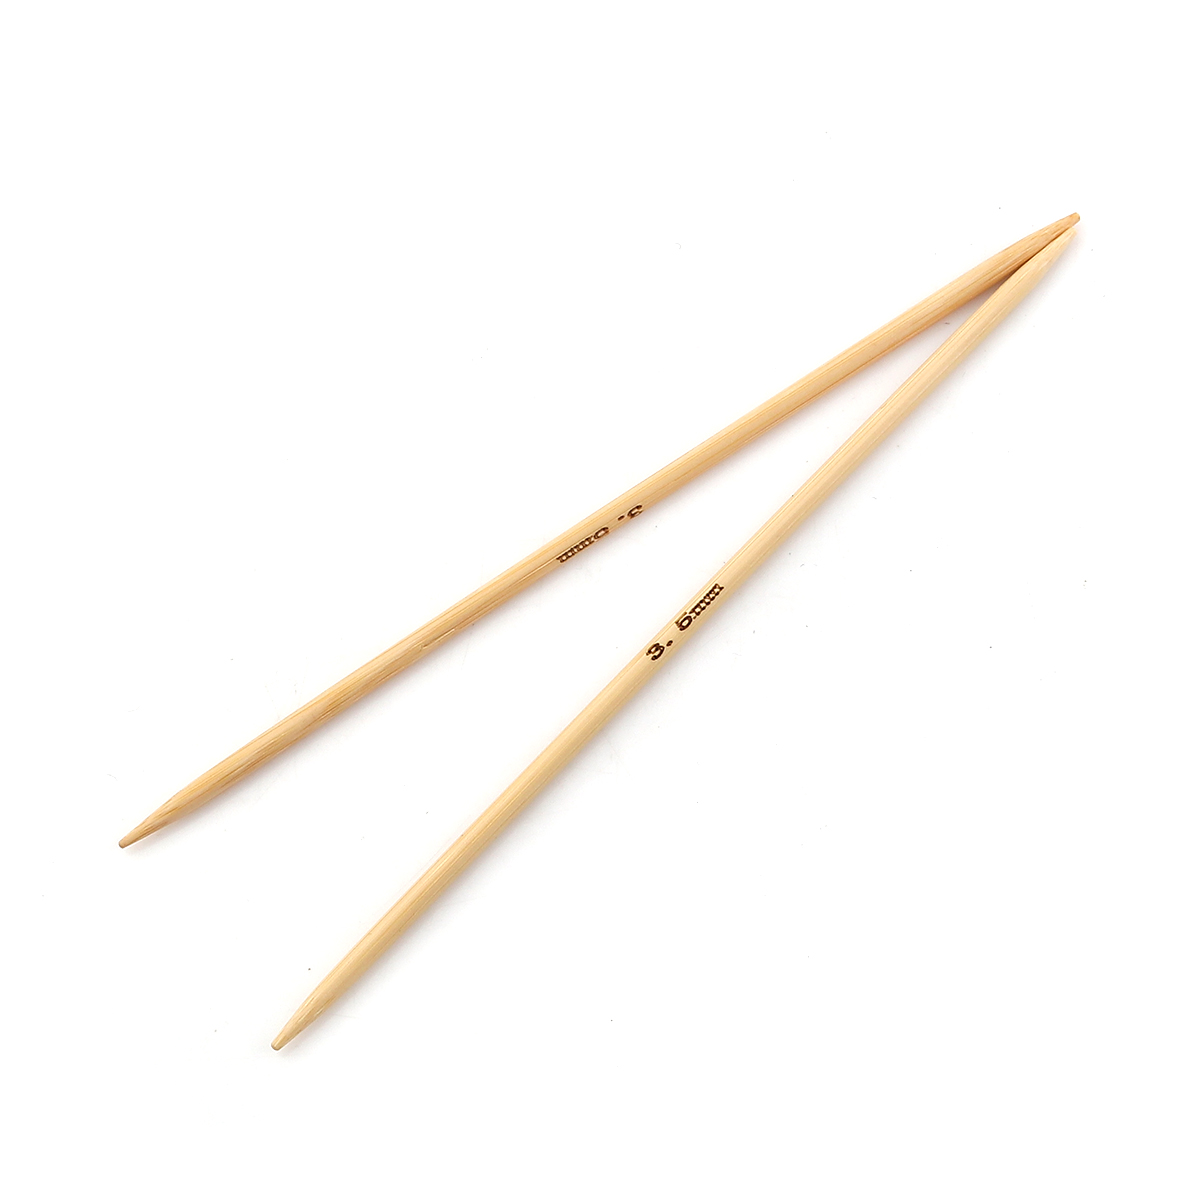 (US4 3.5mm) 竹 ダブルポイント 編み針 ナチュラル 15cm 長さ、 2 個 の画像